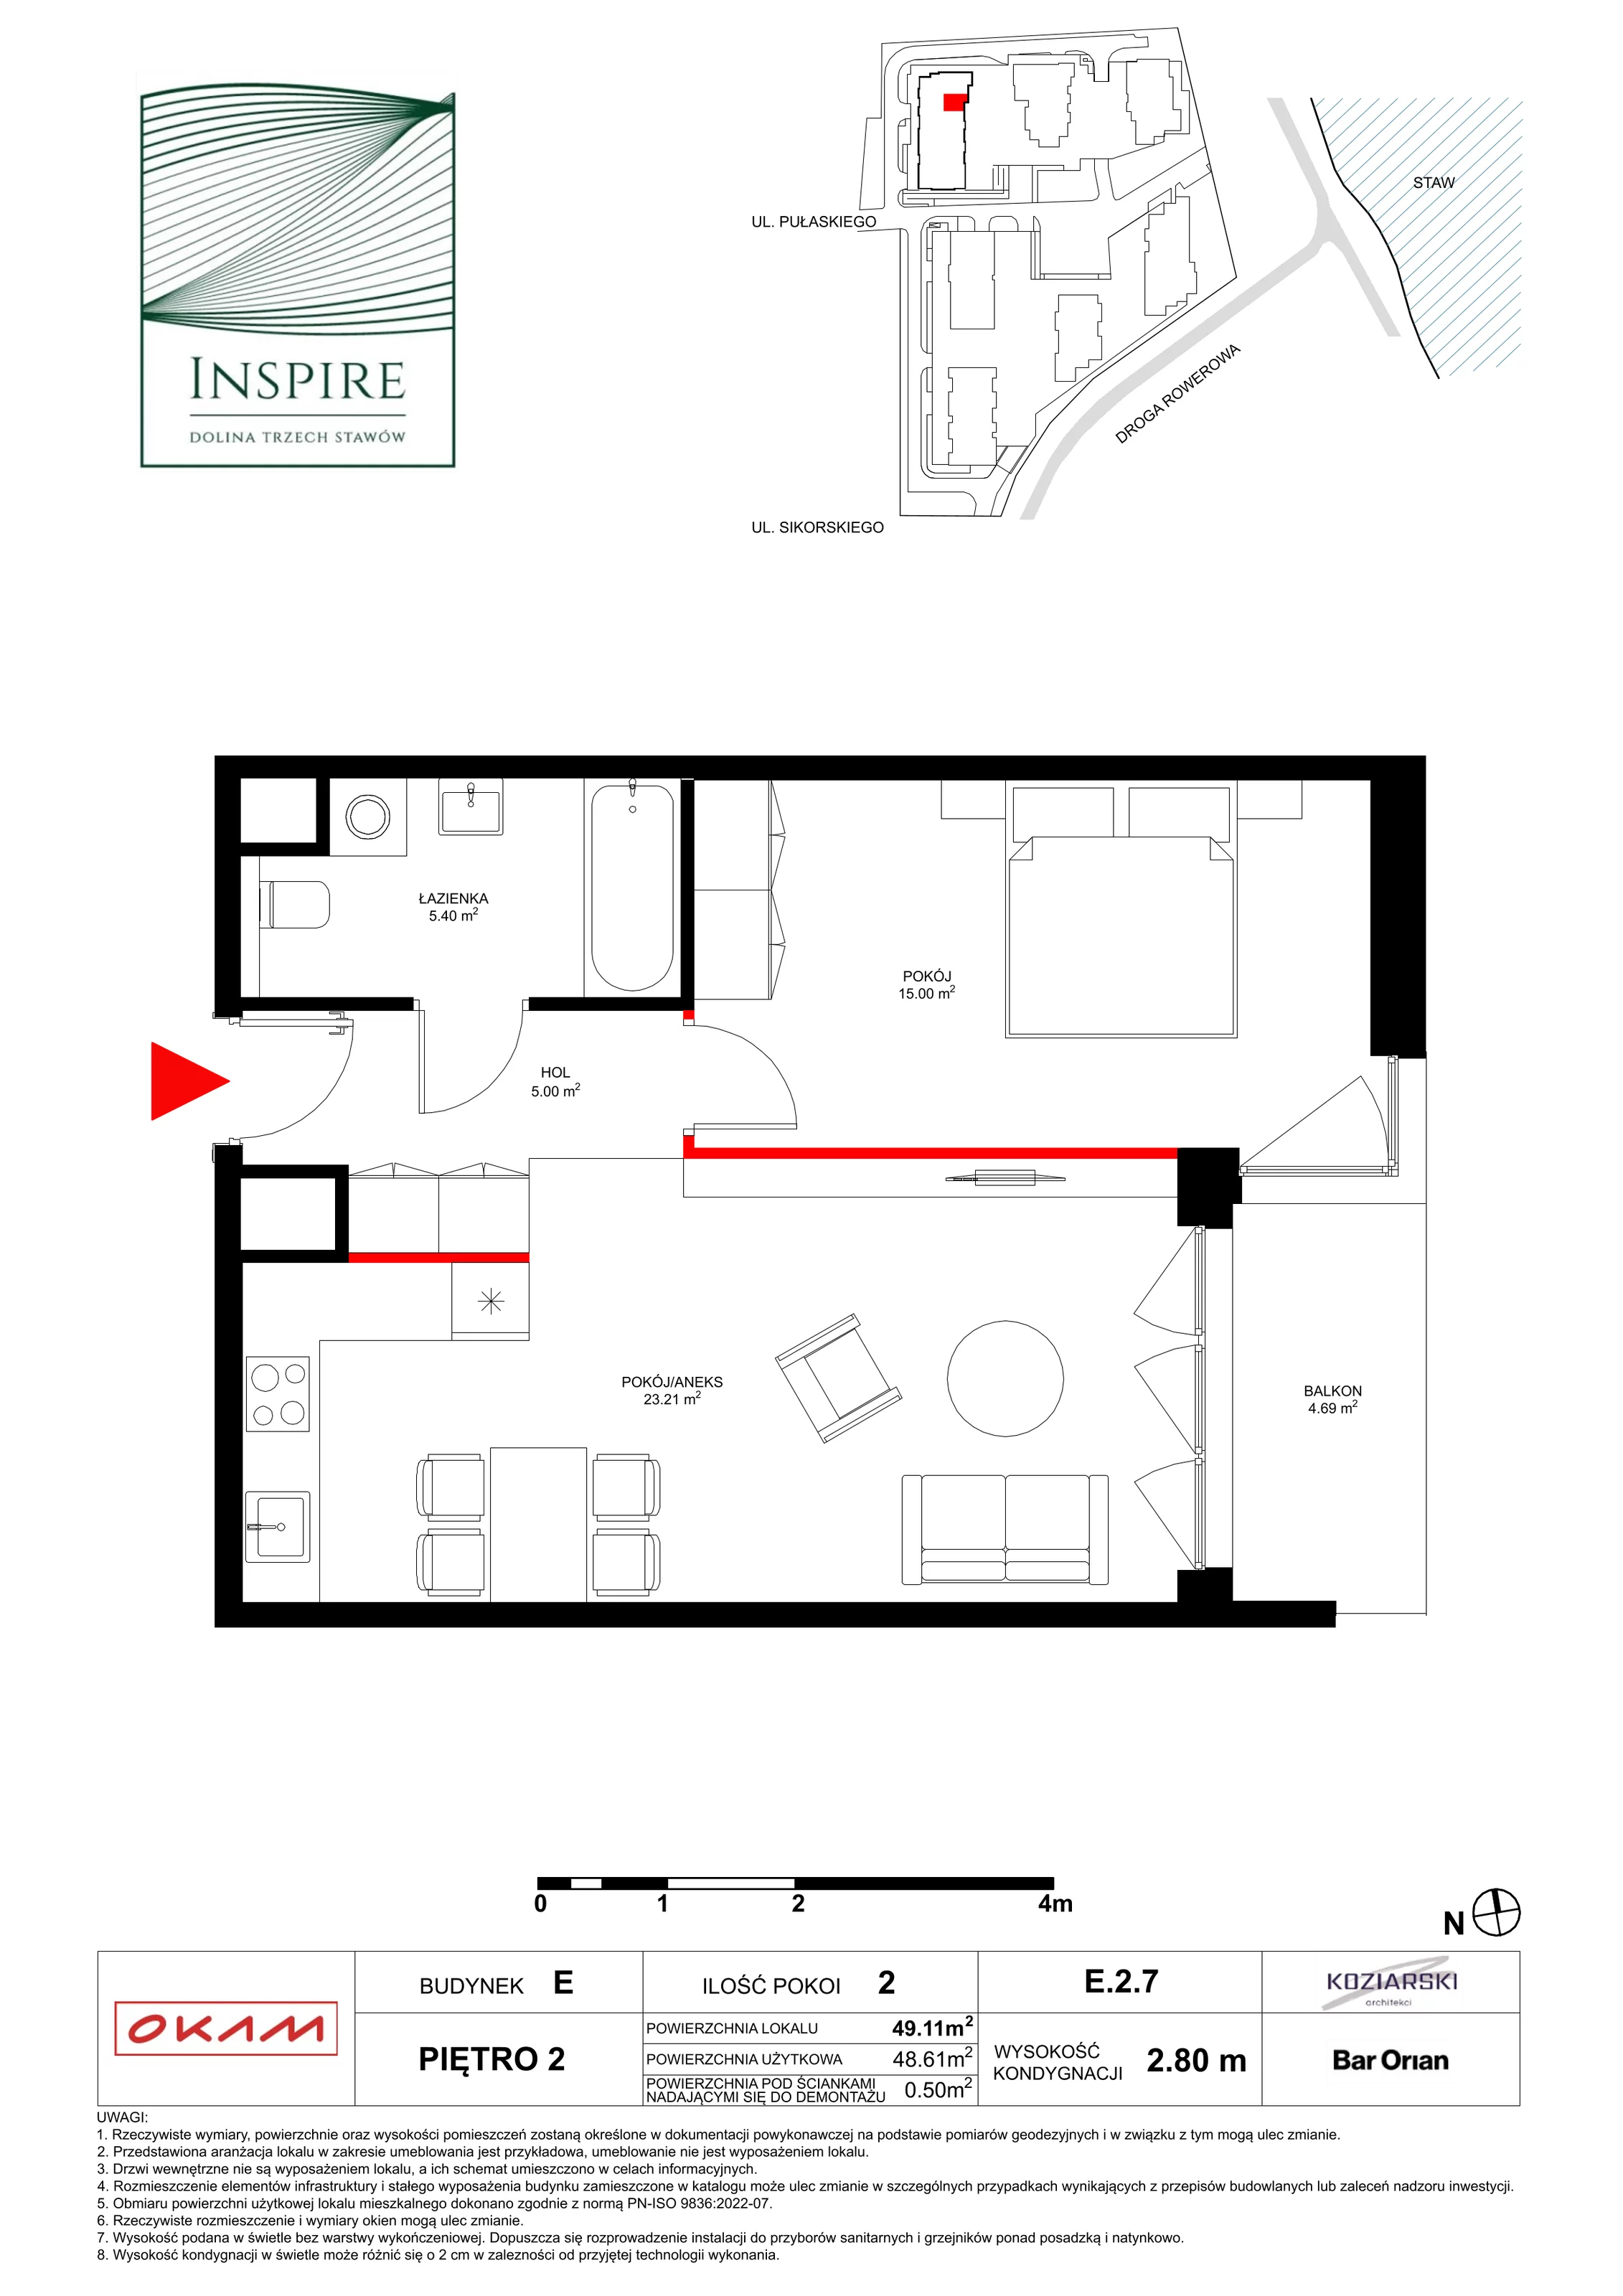 Apartament 48,61 m², piętro 2, oferta nr E.2.7, Inspire, Katowice, Osiedle Paderewskiego-Muchowiec, Dolina Trzech Stawów, ul. gen. Sikorskiego 41